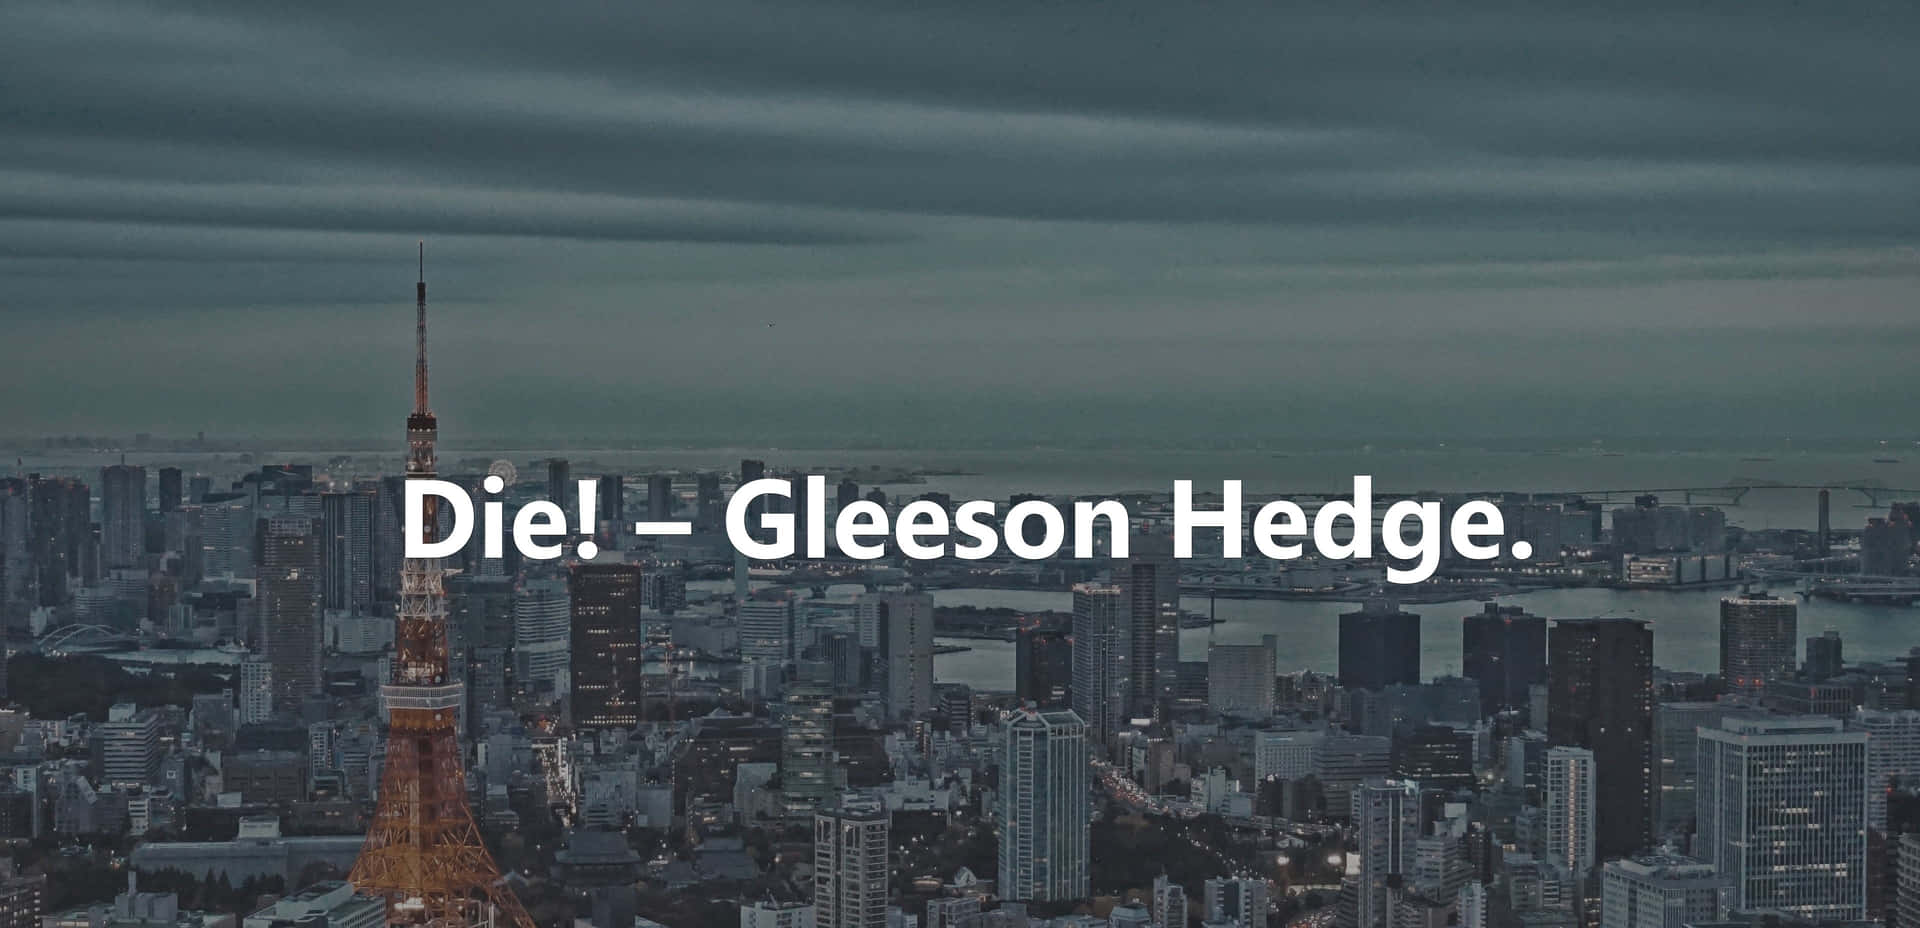 Diegleston Hedge - Et Bymotiv Med Ordene 